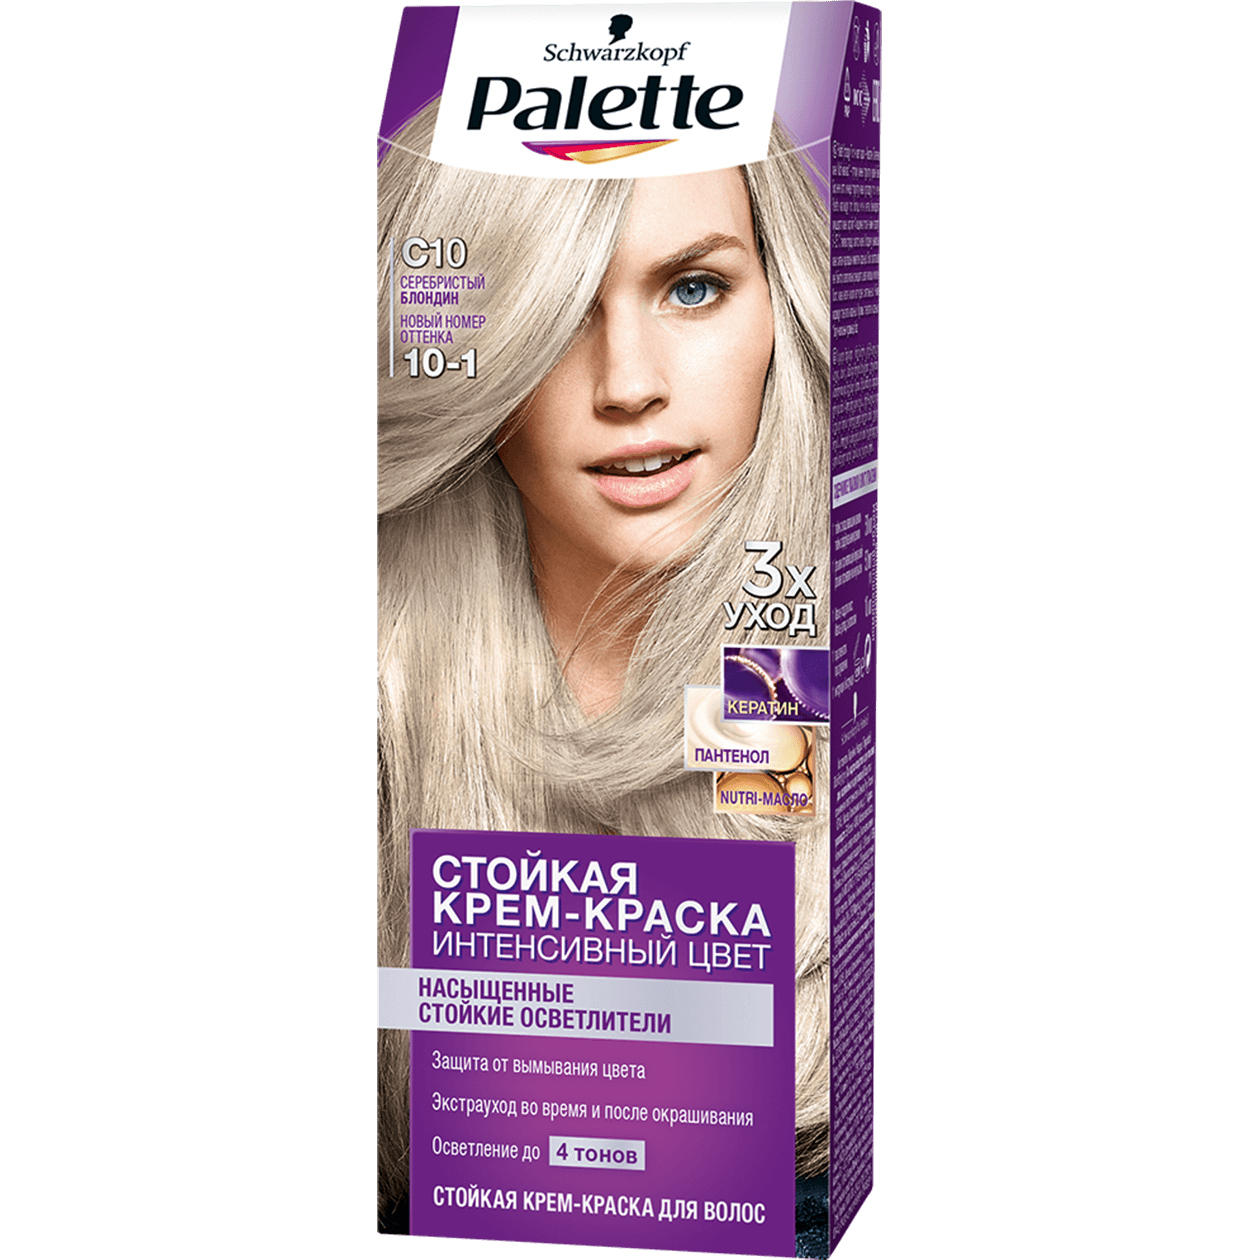 Крем-краска для волос Palette Интенсивный цвет 10-1, C10 Серебристый блондин 110 мл крем краска для волос palette интенсивный 10 1 c10 серебристый блондин 110 мл